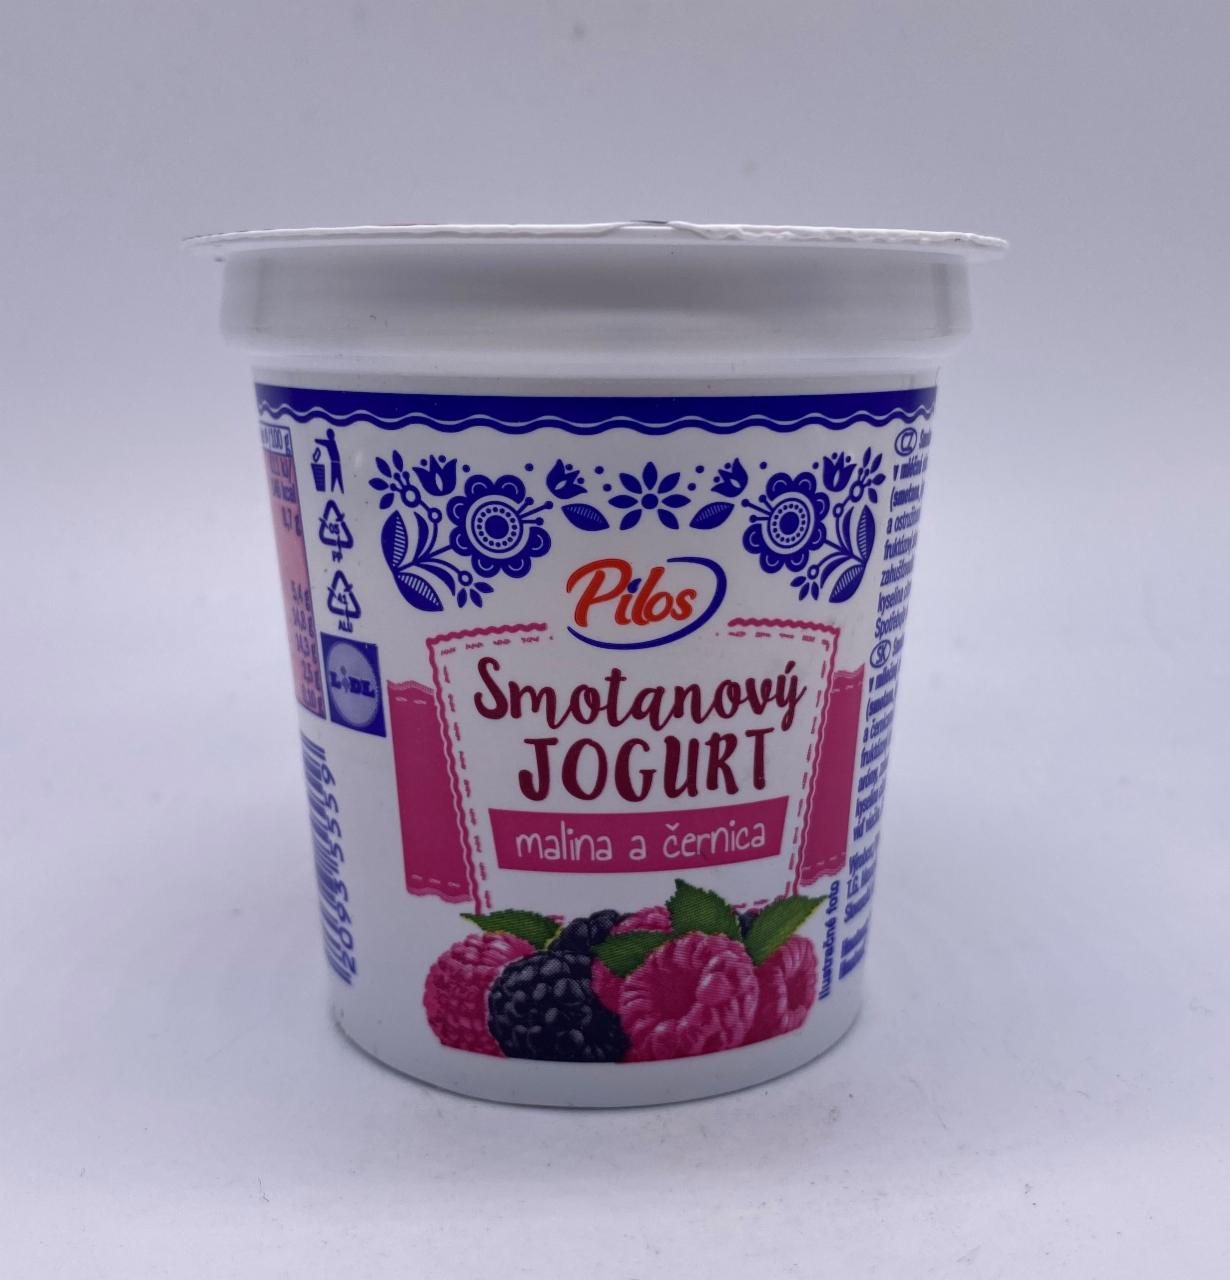 Fotografie - Smotanový jogurt malina a černica Pilos